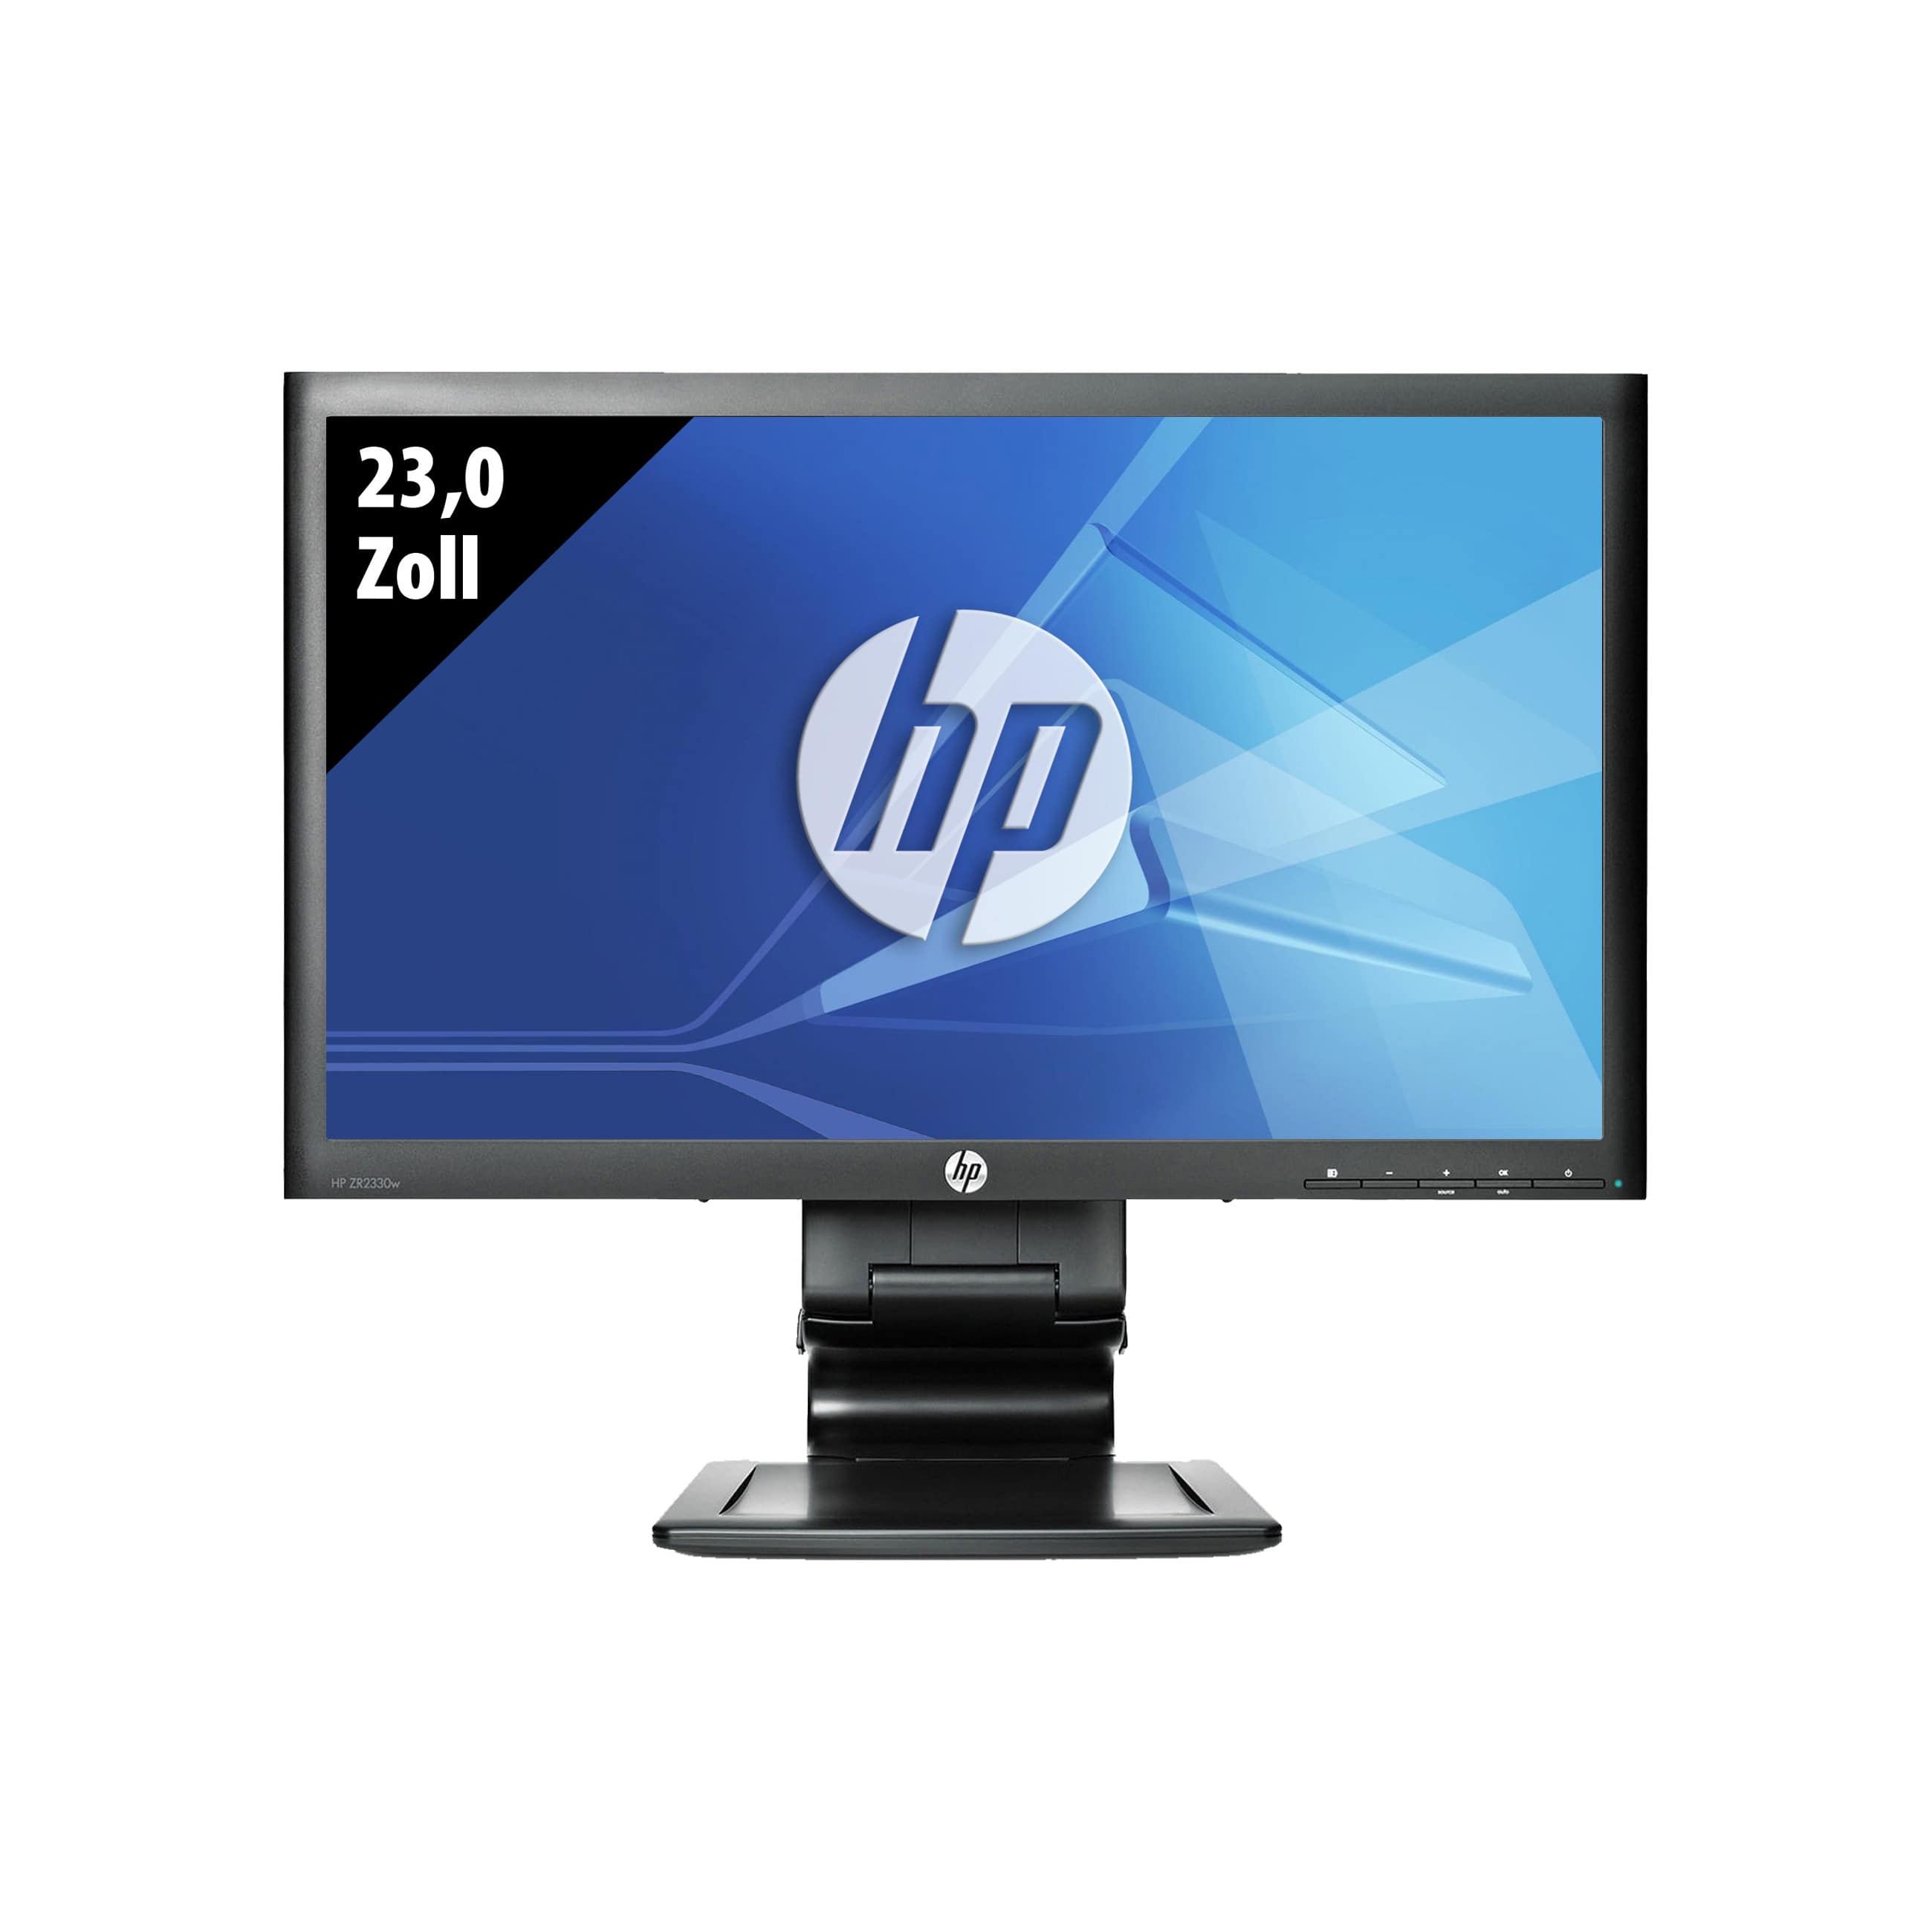 HP Z Display ZR2330w - 1920 x 1080 - FHD - 23,0 Zoll - 14 ms - Schwarz